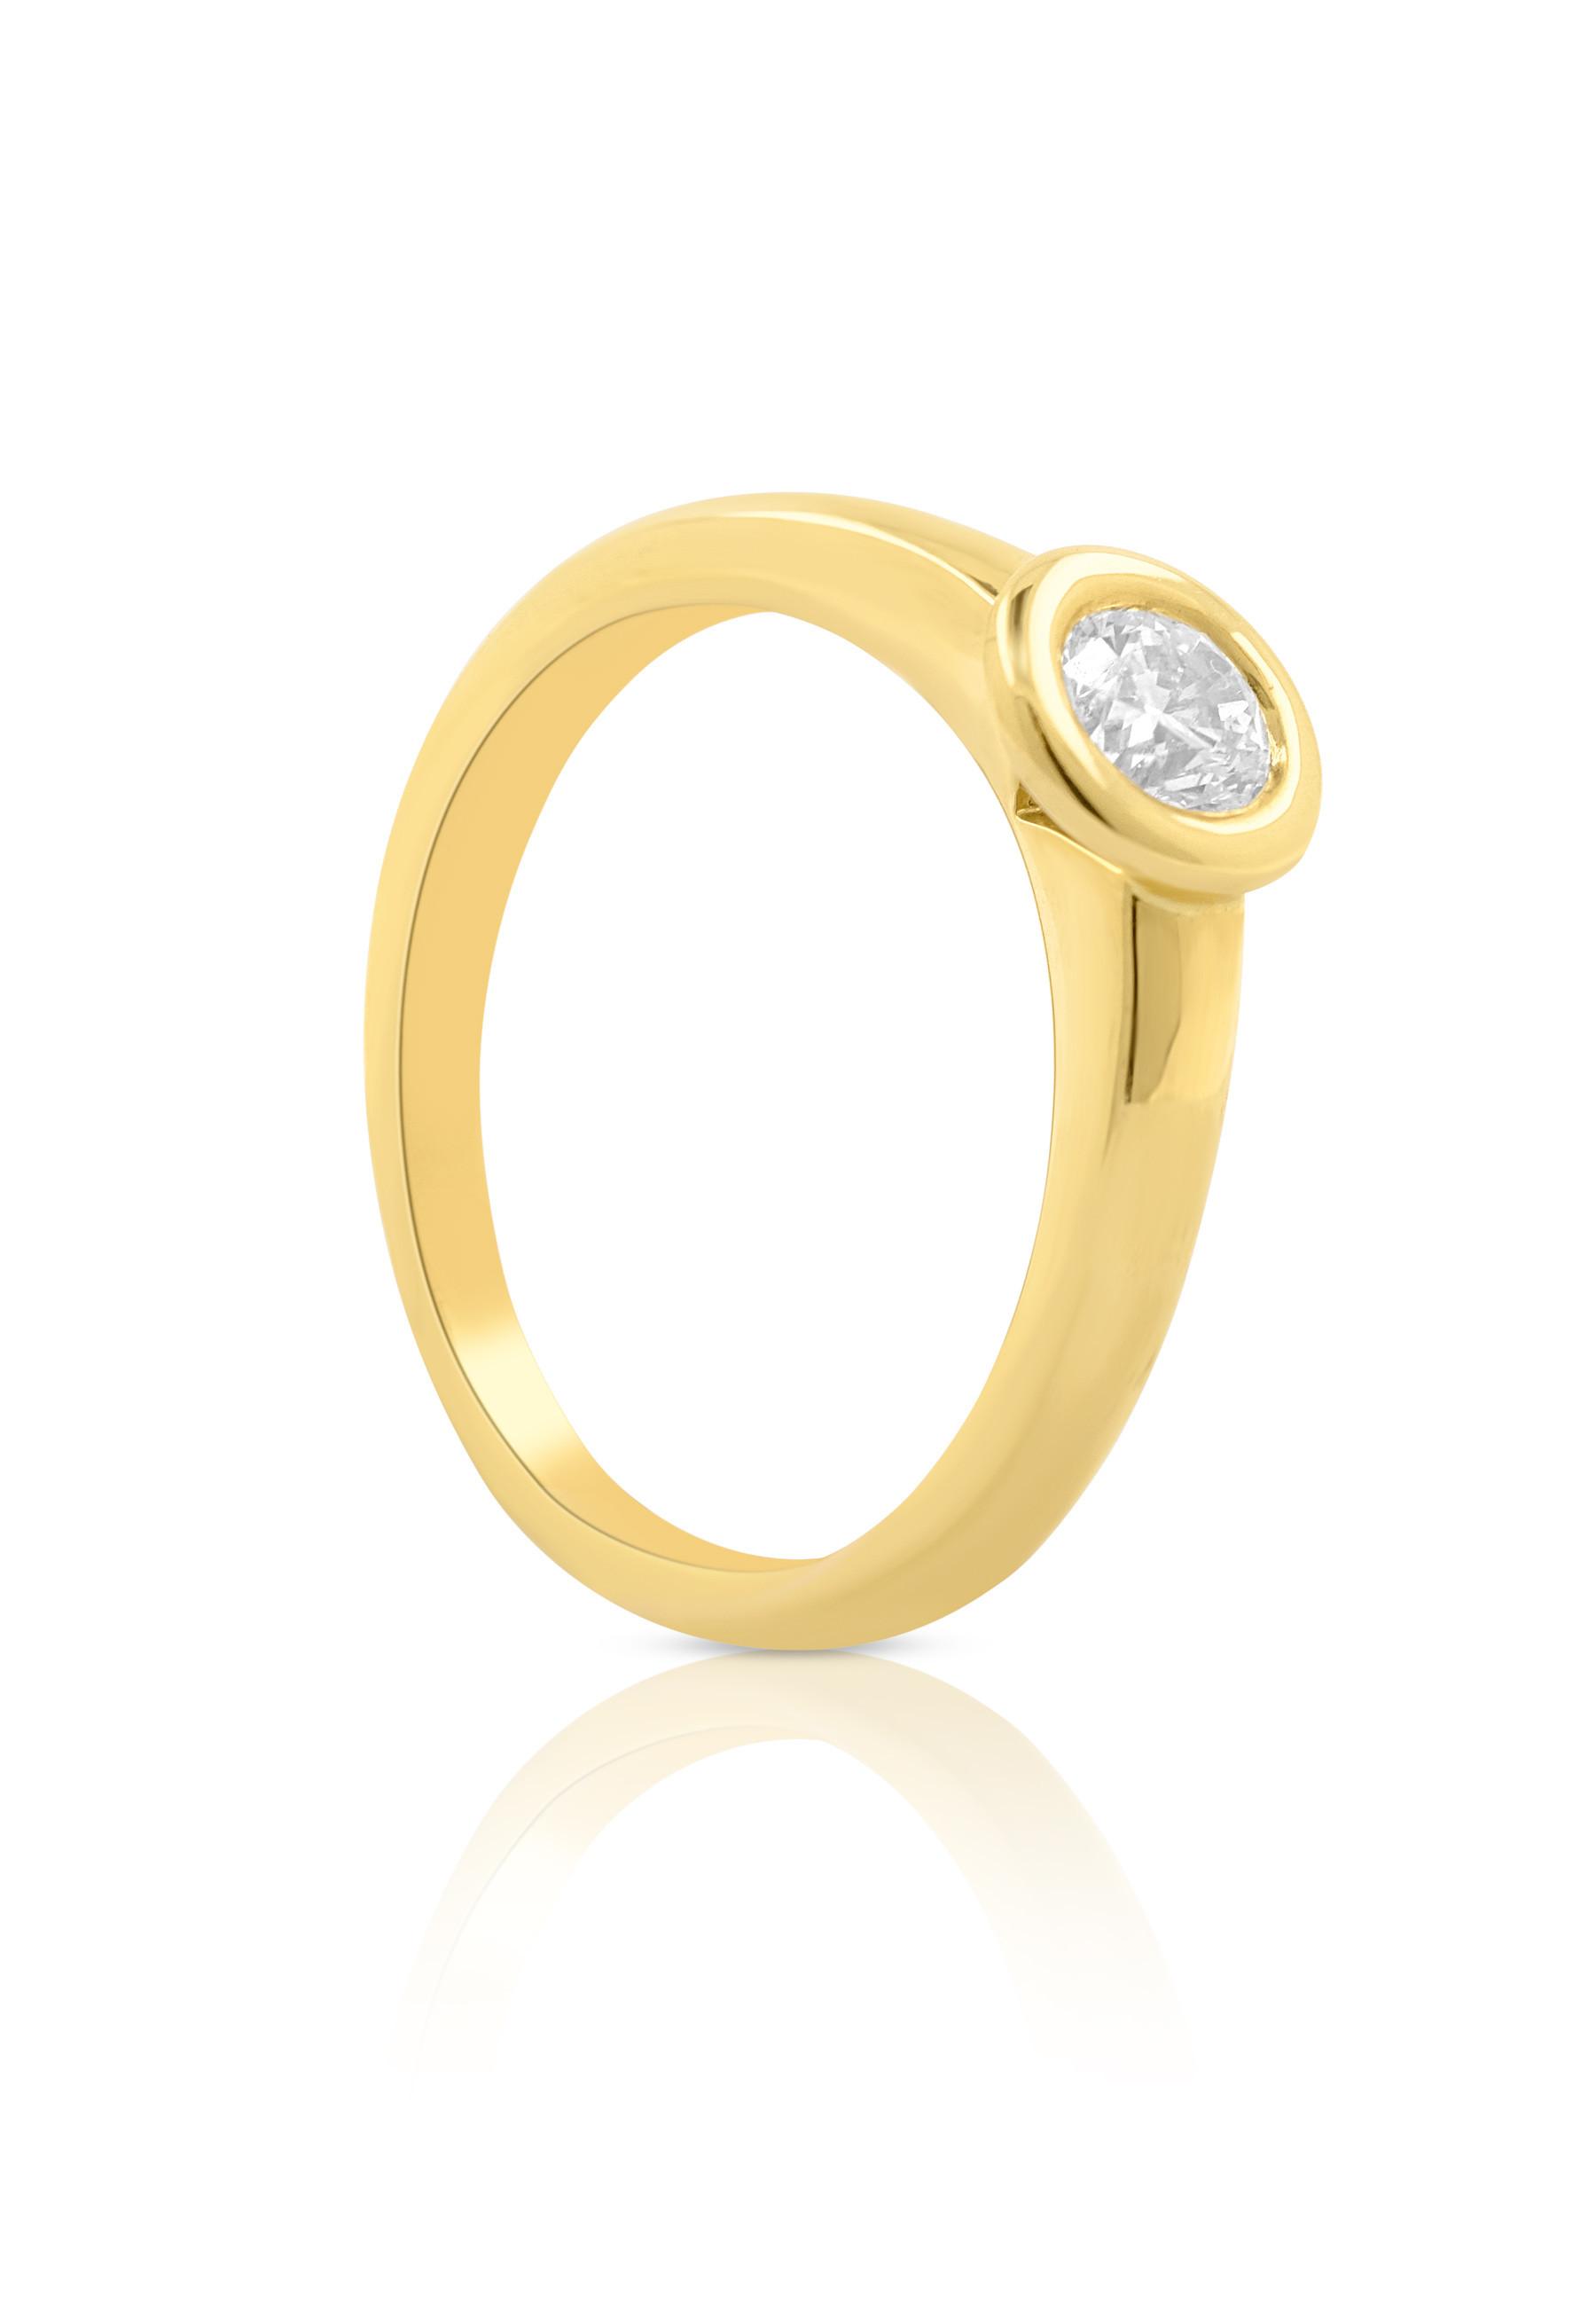 MUAU Schmuck  Solitaire Ring Diamant 0.40ct. Gelbgold 750 